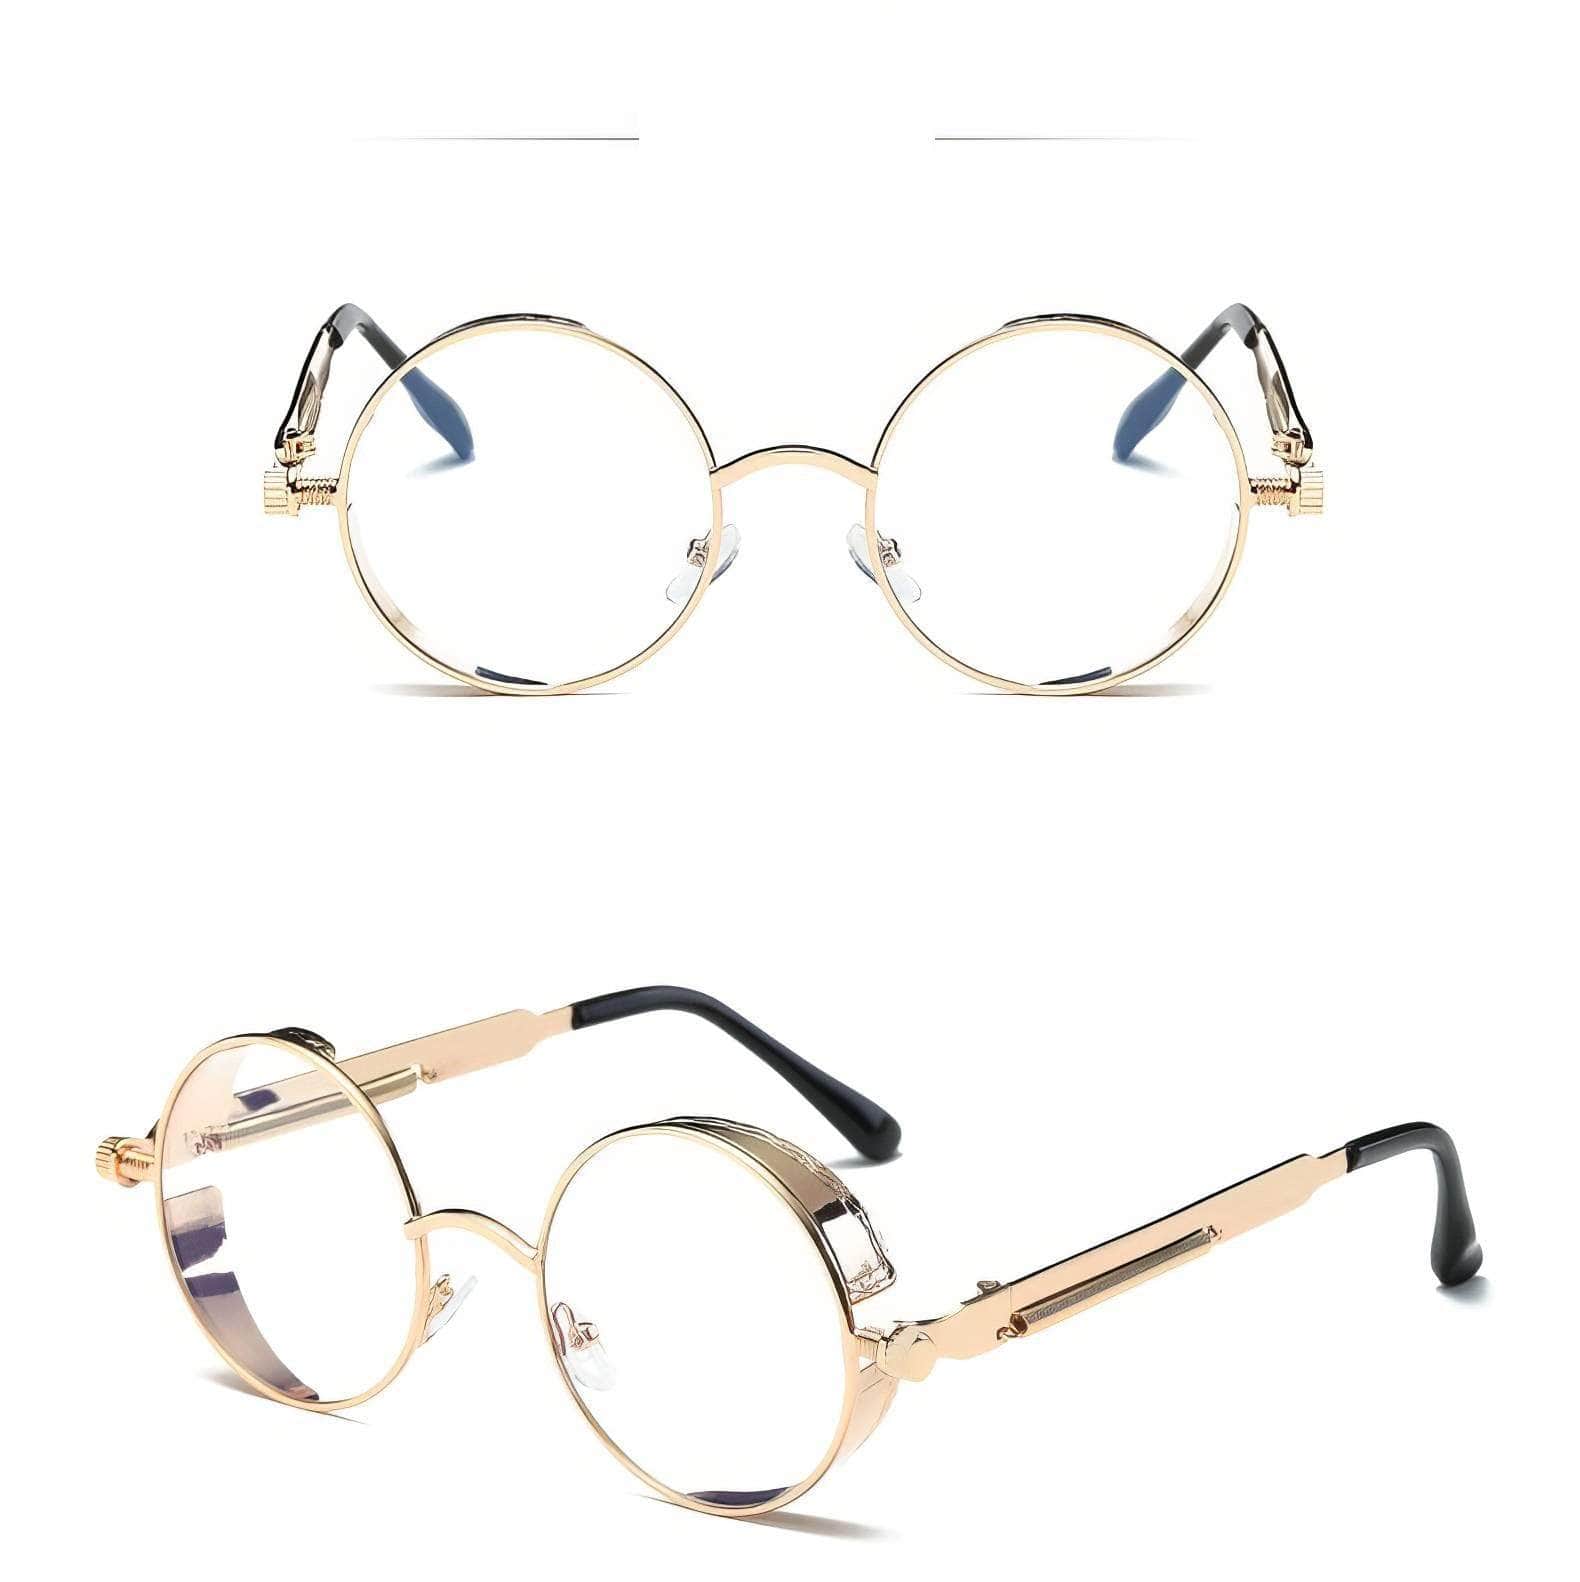 Small Round Frame Genre Sunglasses